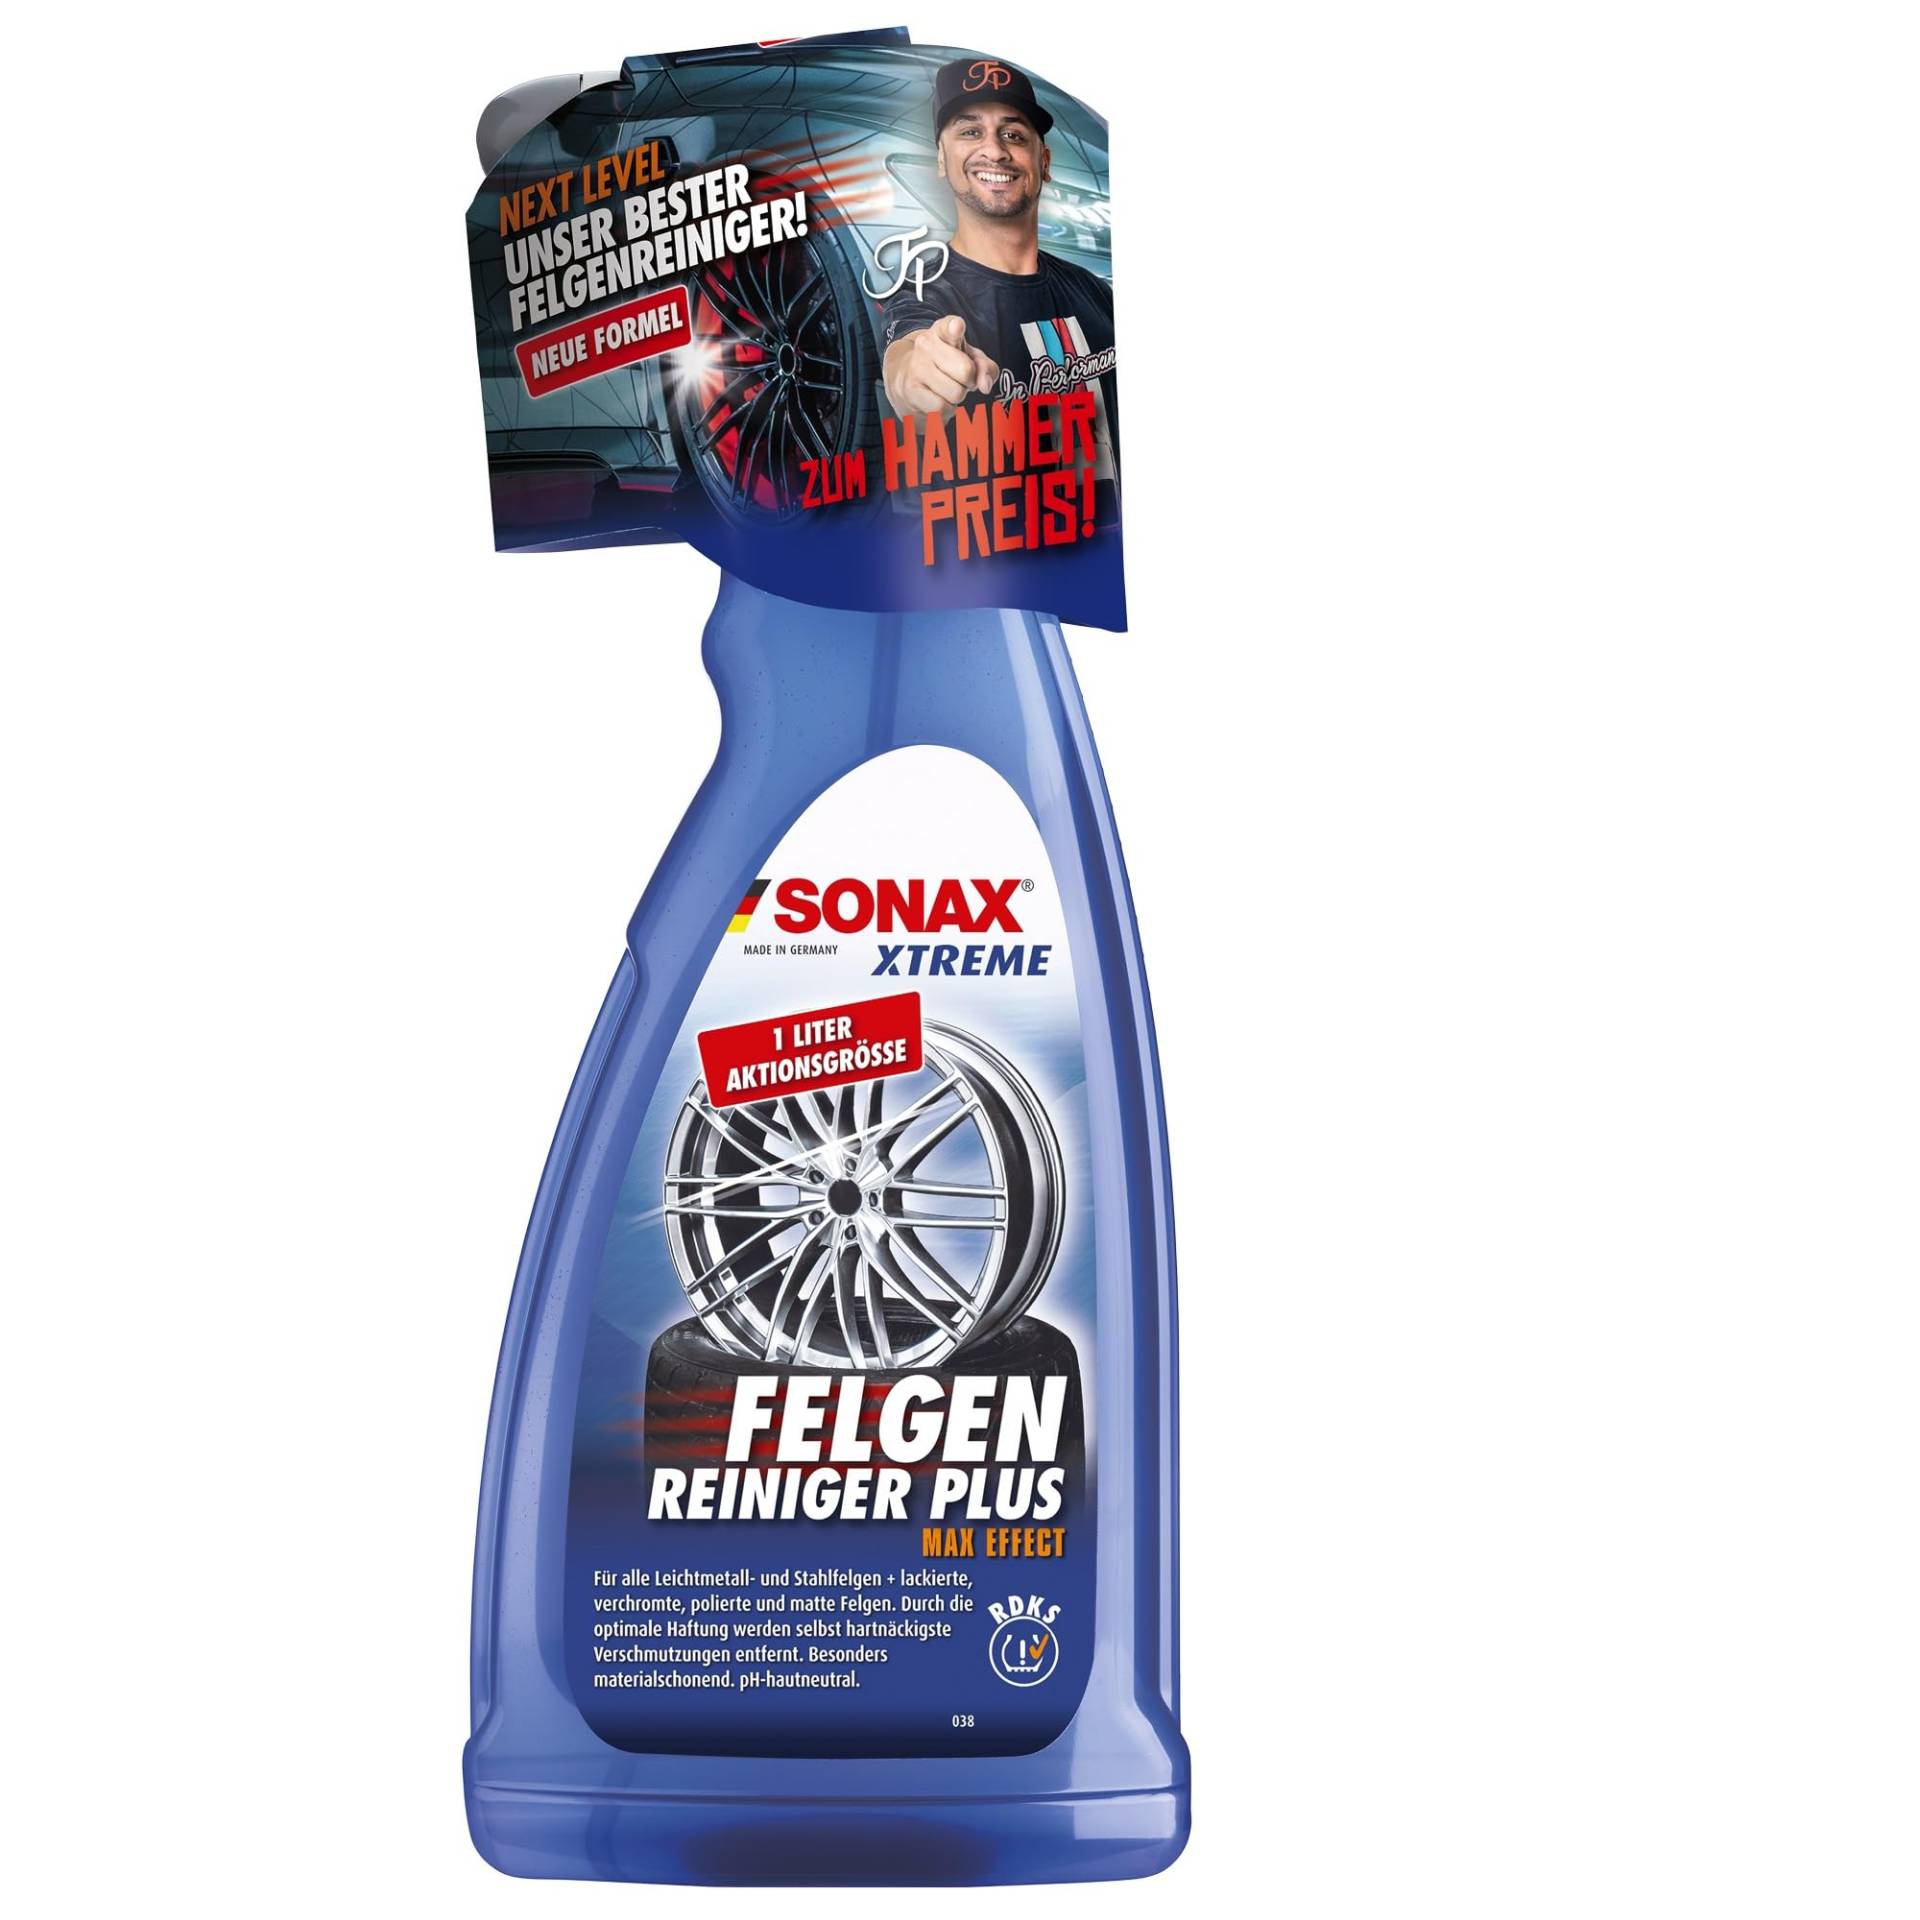 SONAX XTREME FelgenReiniger PLUS (1 Liter) effiziente Reinigung aller Leichtmetall- und Stahlfelgen sowie lackierte, verchromte und polierte Felgen | Art-Nr. 02313000 von SONAX